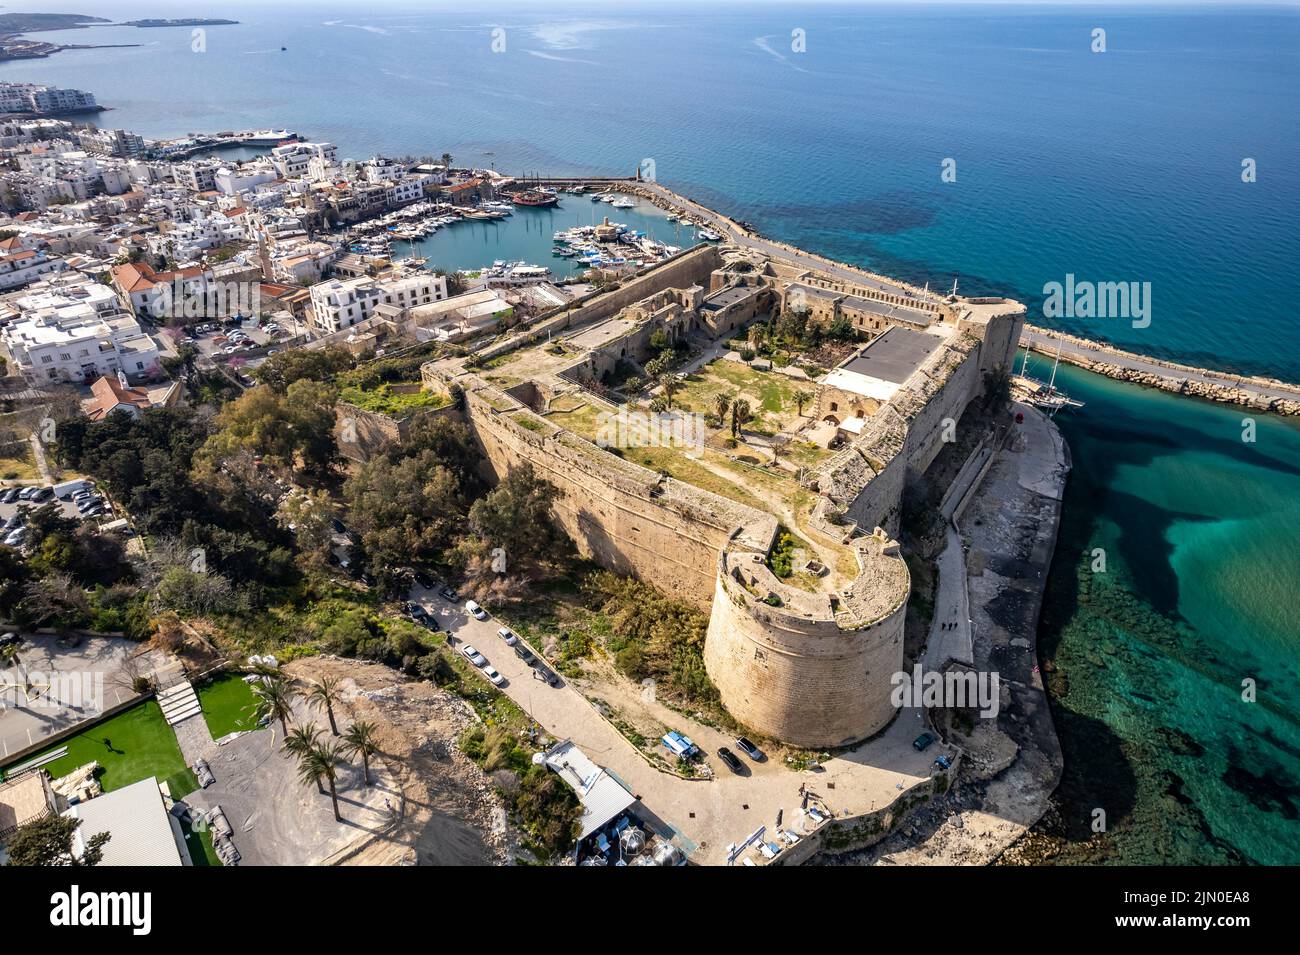 Festung und Hafen von Kyrenia oder Girne aus der Luft, Türkische Republik Nordzypern, Europa  |   Kyrenia Castle and harbour aerial view, Kyrenia or Stock Photo